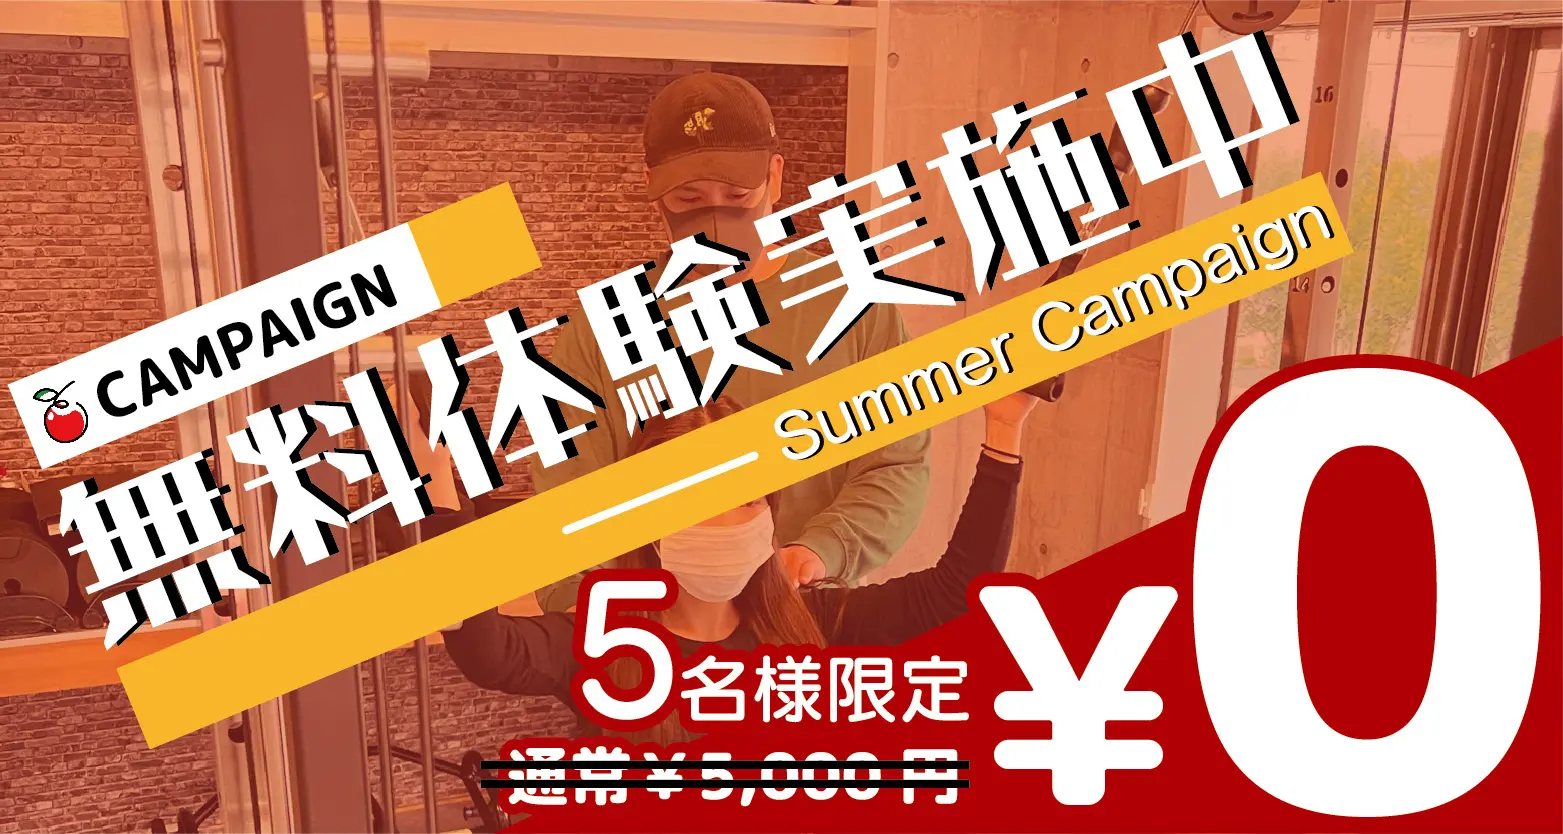 体験セッション０円キャンペーンのバナー広告